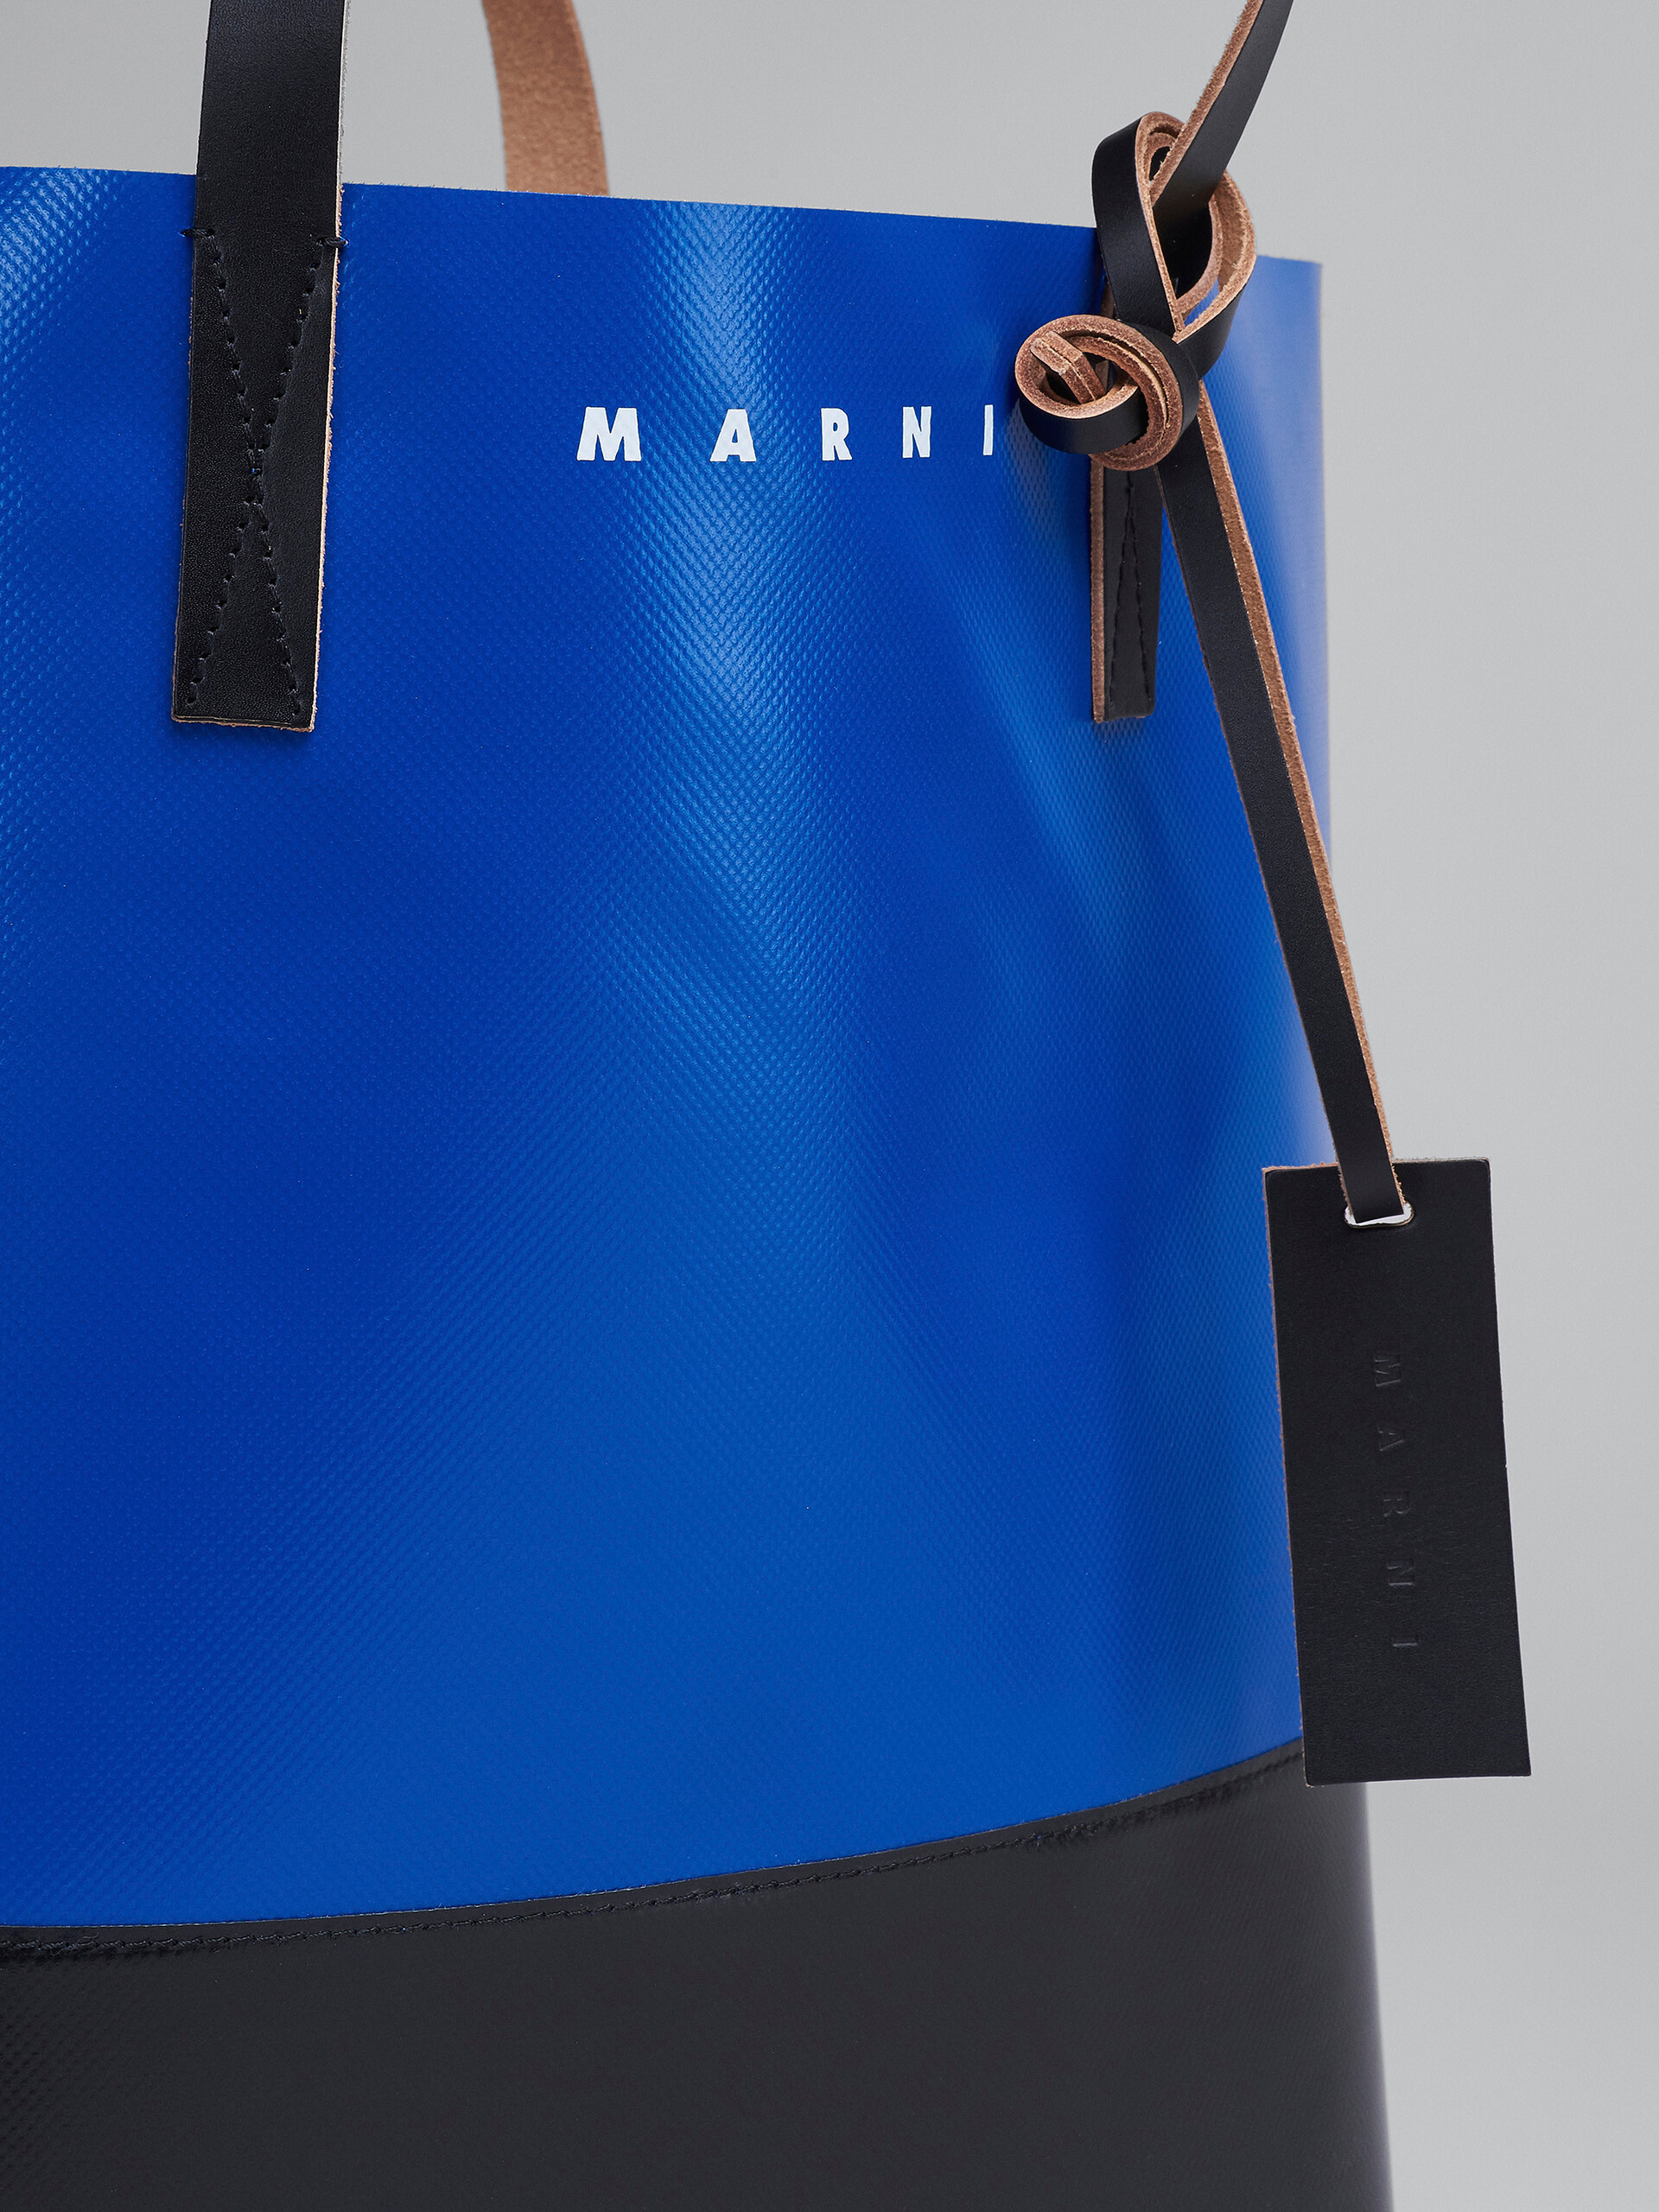 バッグMARNI マルニ PVCショッピングバッグ ブラック&ブルー - トート